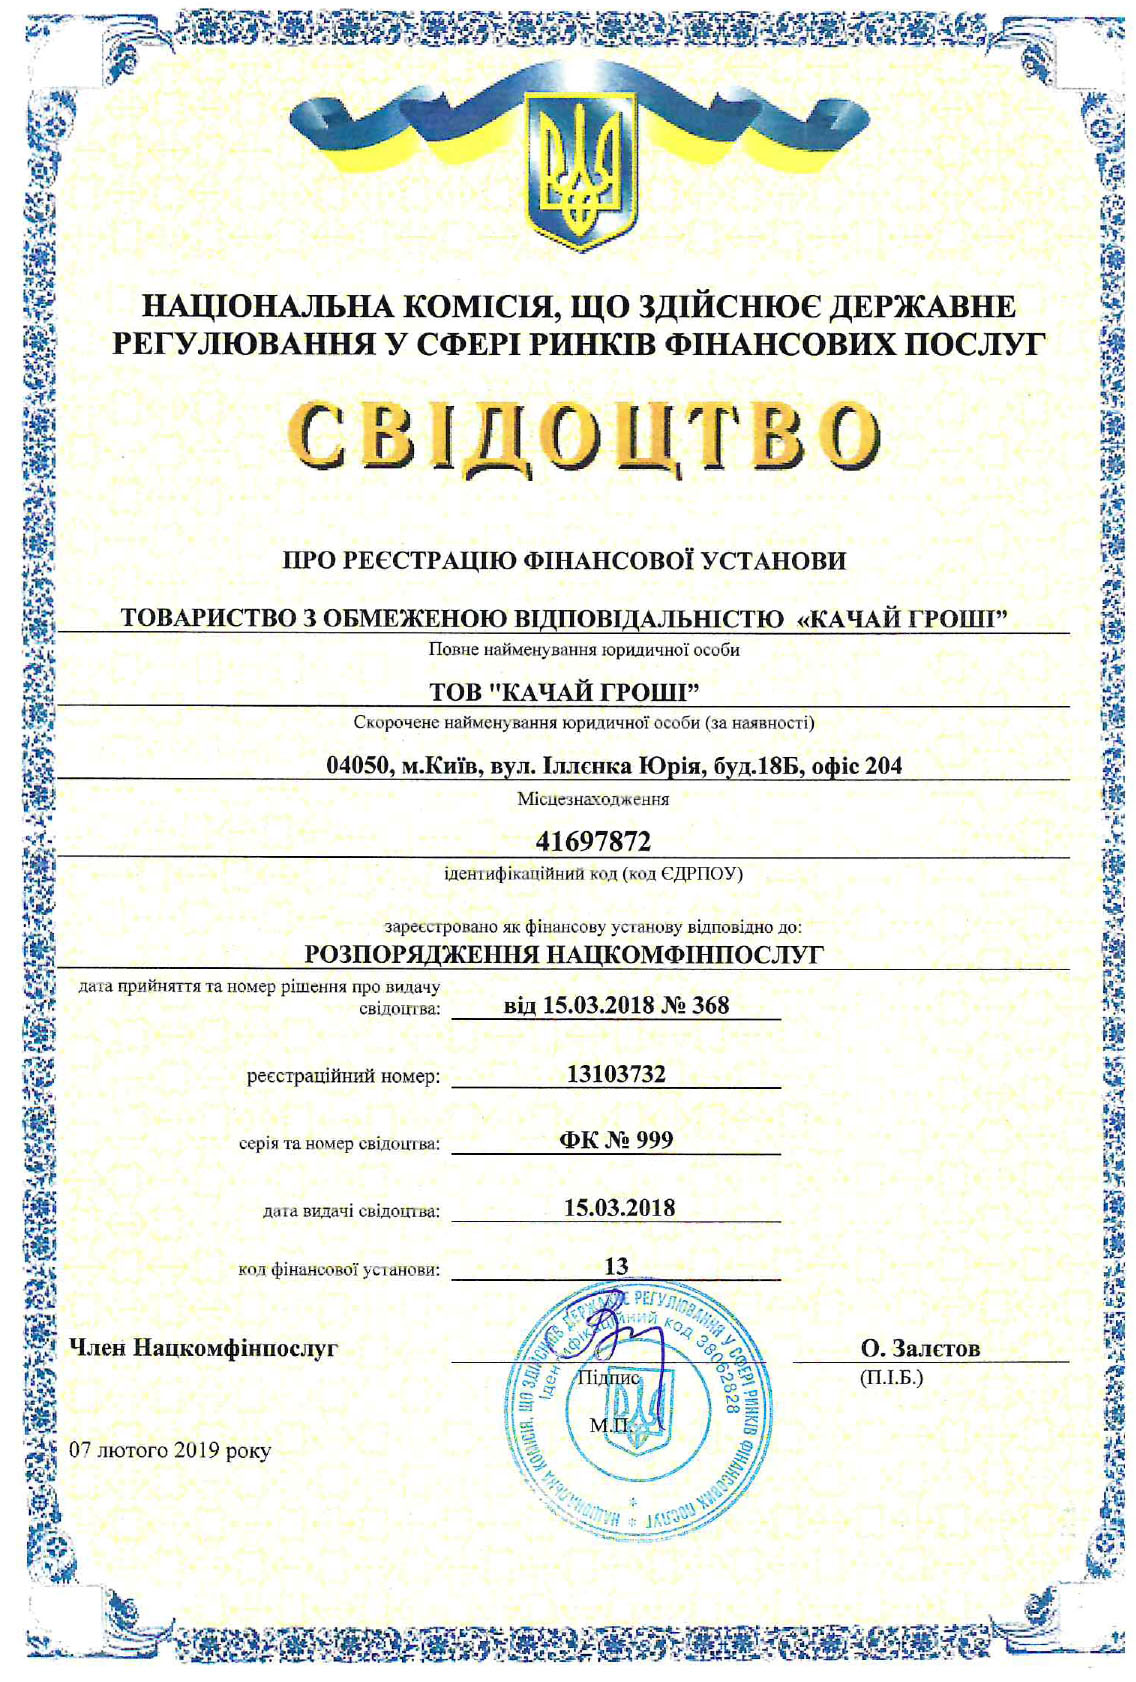 Сертификат Качай Грошi